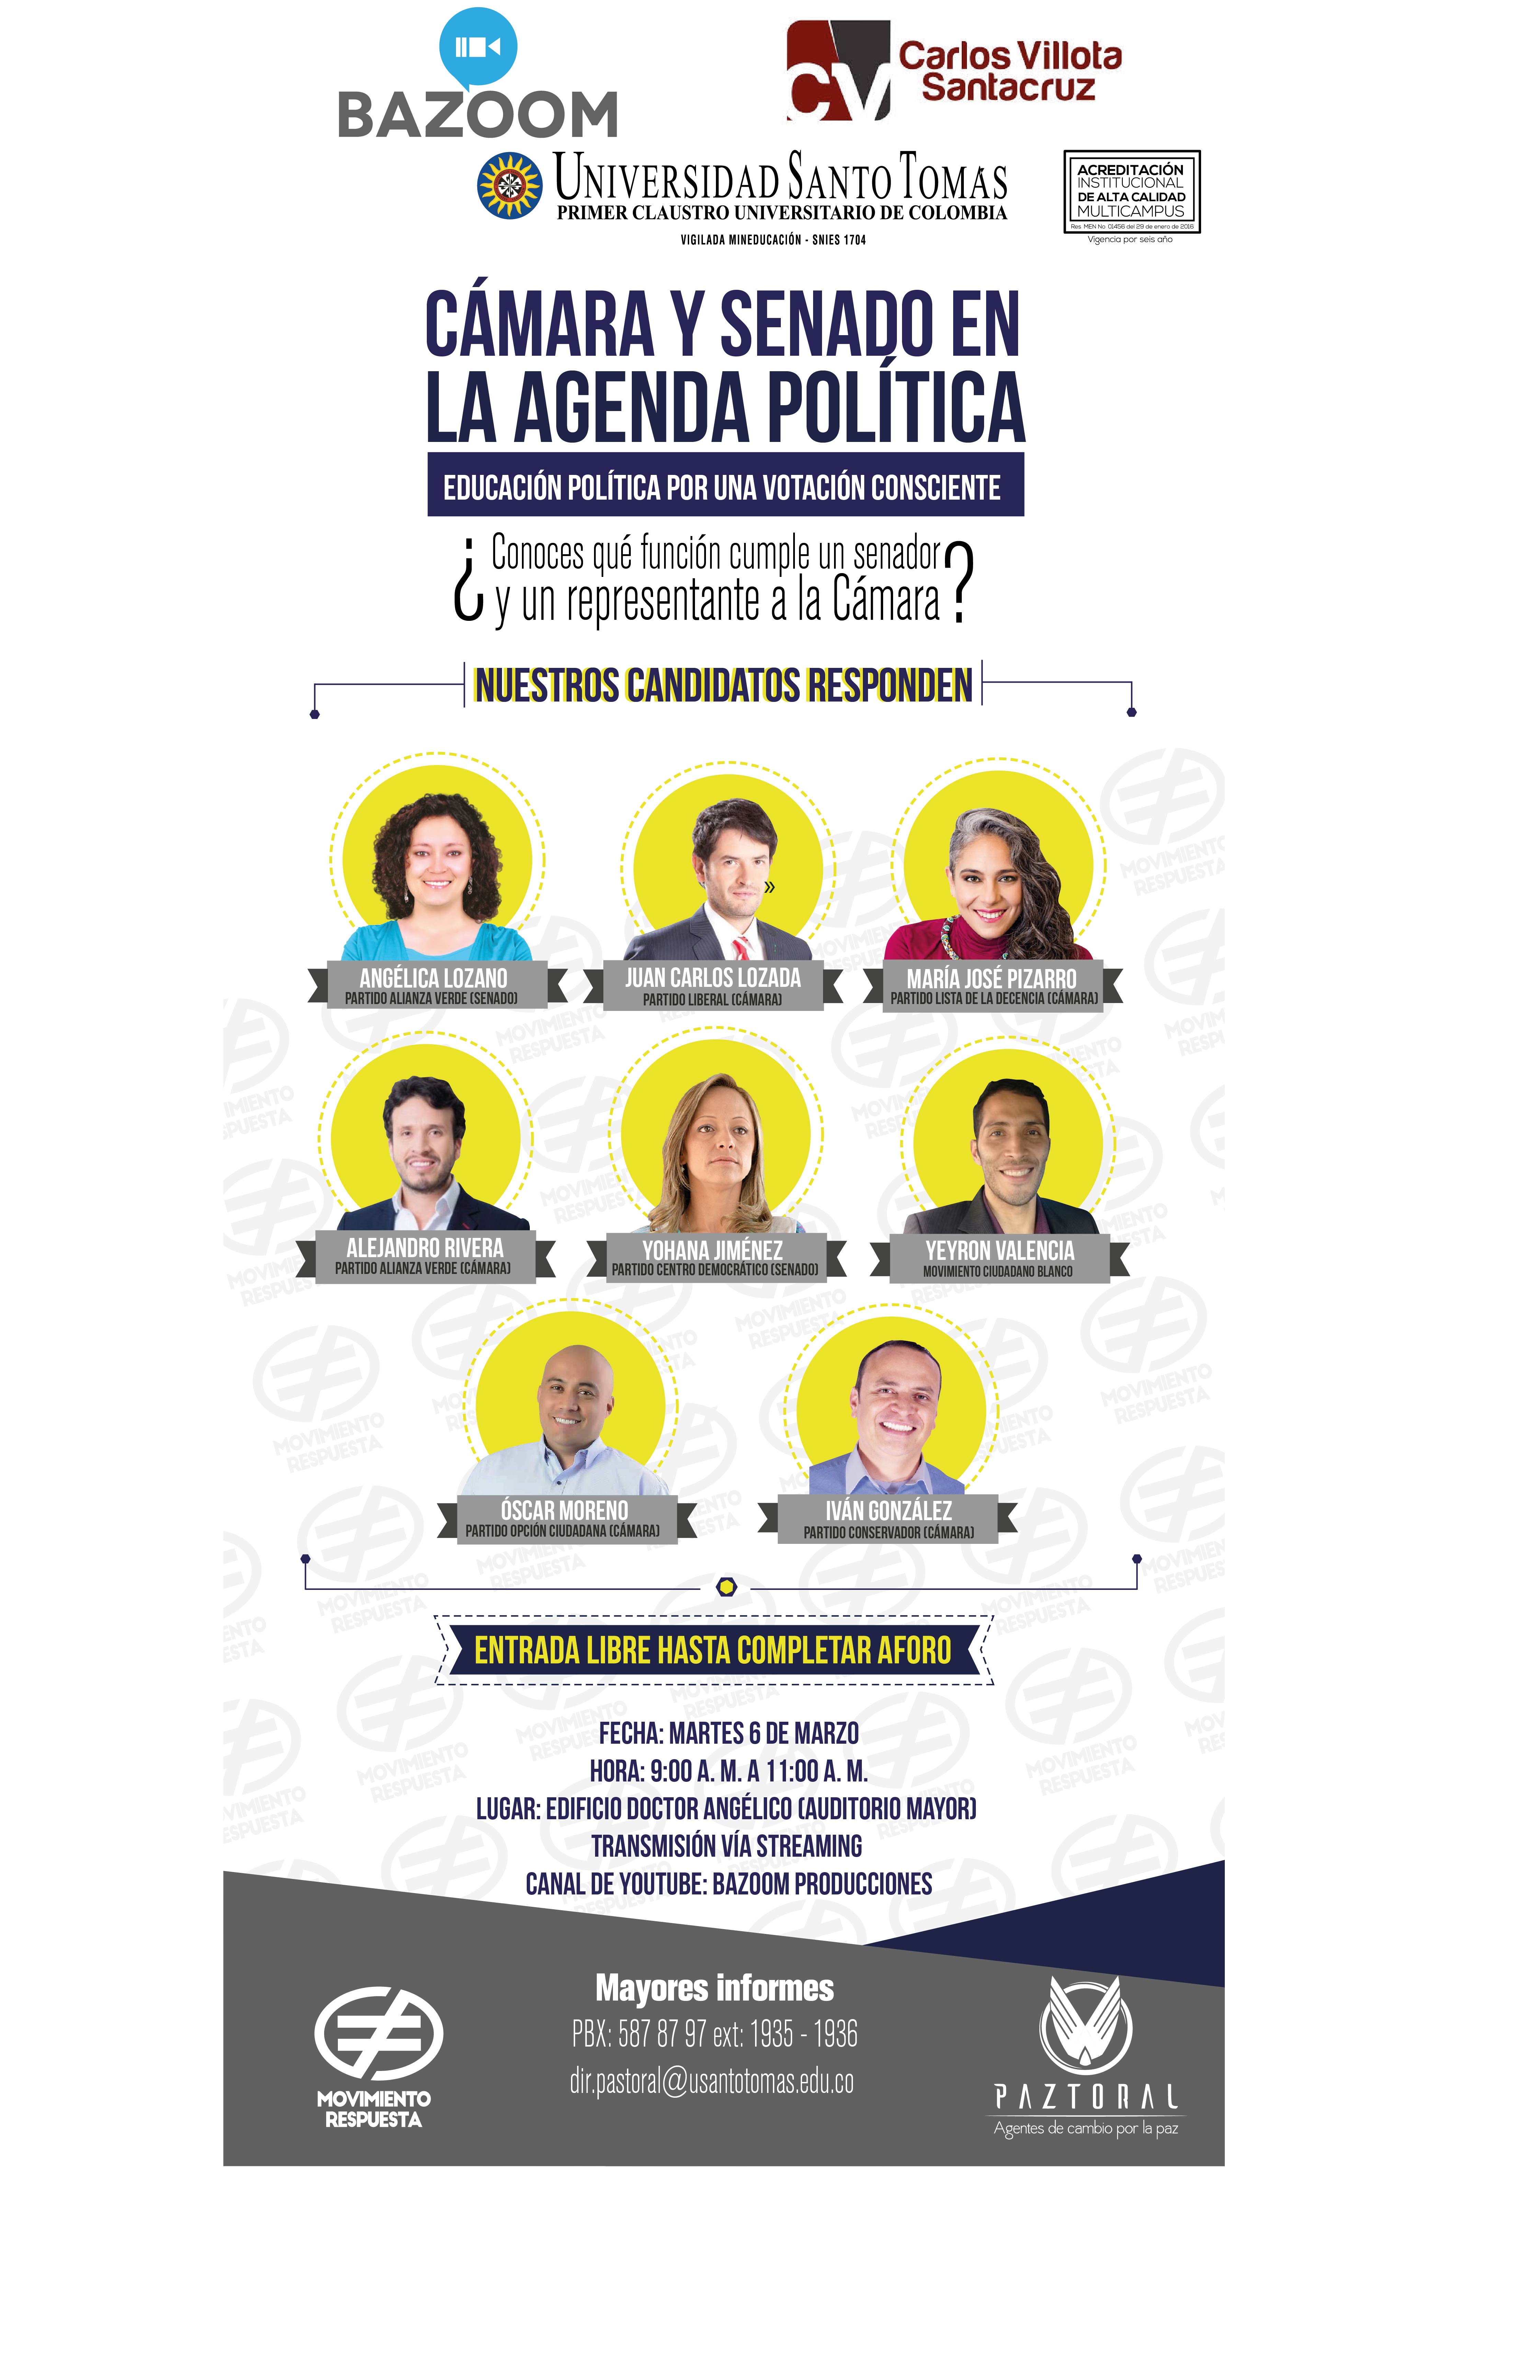 Este martes 6 de marzo Debate de candidatos al Congreso en la Universidad Santo Tomás de Bogotá